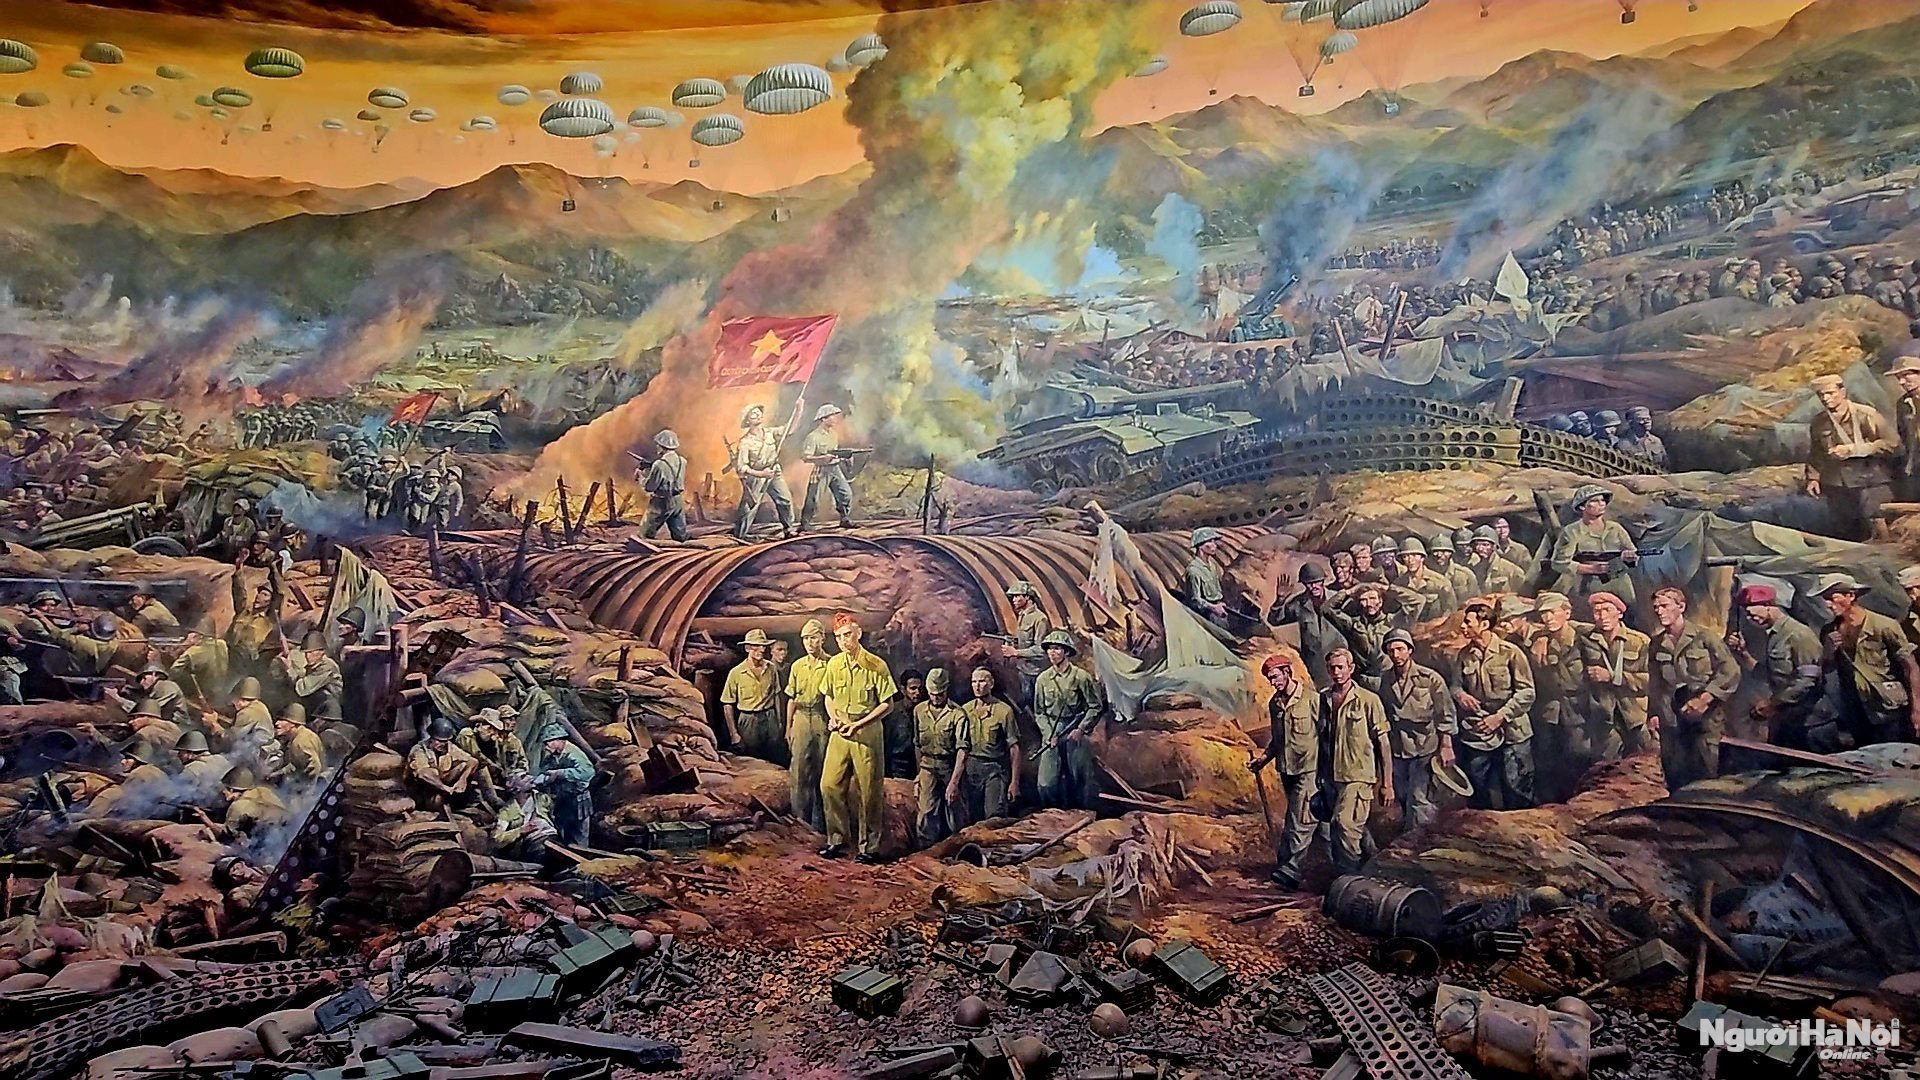 Trường đoạn 4 “Chiến thắng” trong bức tranh Panorama tái hiện Chiến dịch Điện Biên Phủ tại Bảo tàng chiến thắng Điện Biên Phủ (Ảnh: Người Hà Nội Online)